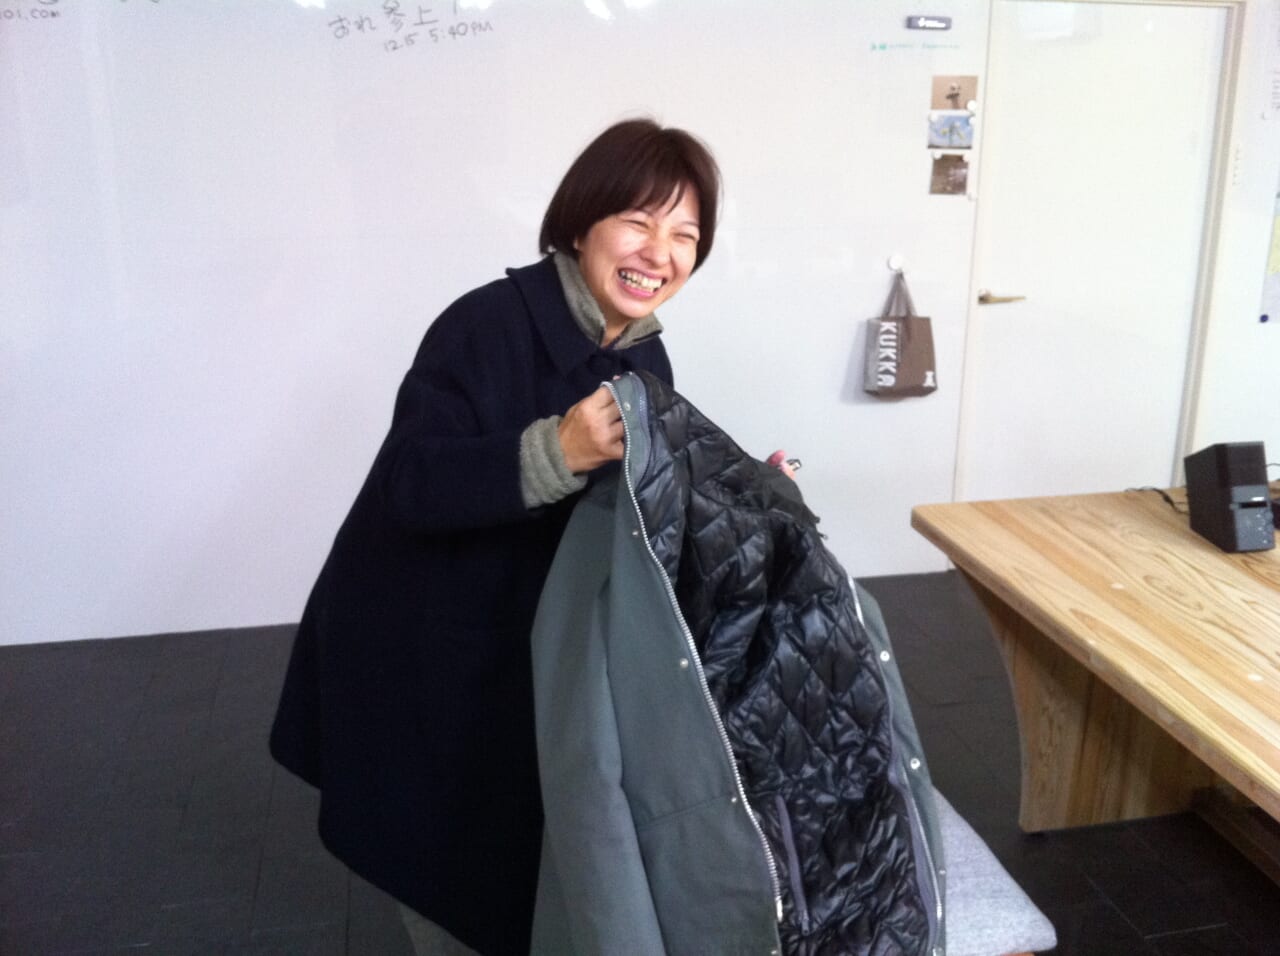 2012年1月17日。第一回さんま寄席の準備中。極寒の日。上着を着ていくのを忘れたまま、一足先に東京に戻ってしまった西田くんに気づいた瞬間の山﨑華恵ちゃん。